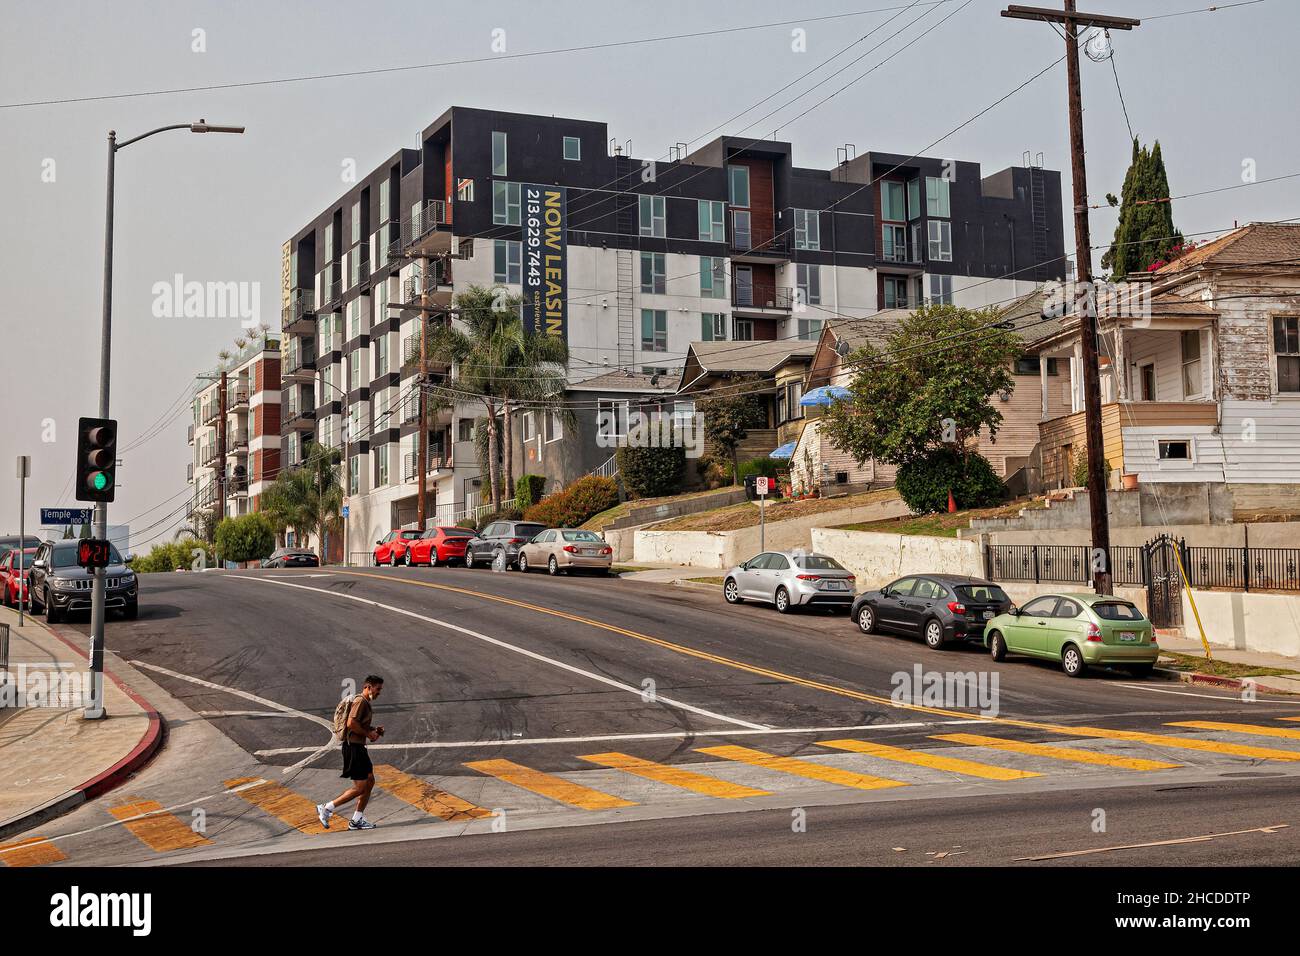 Un panneau « Now Leasing » est suspendu à un immeuble résidentiel de plusieurs logements récemment construit le long de Boylston Street, Vista Hermosa, Los Angeles Banque D'Images